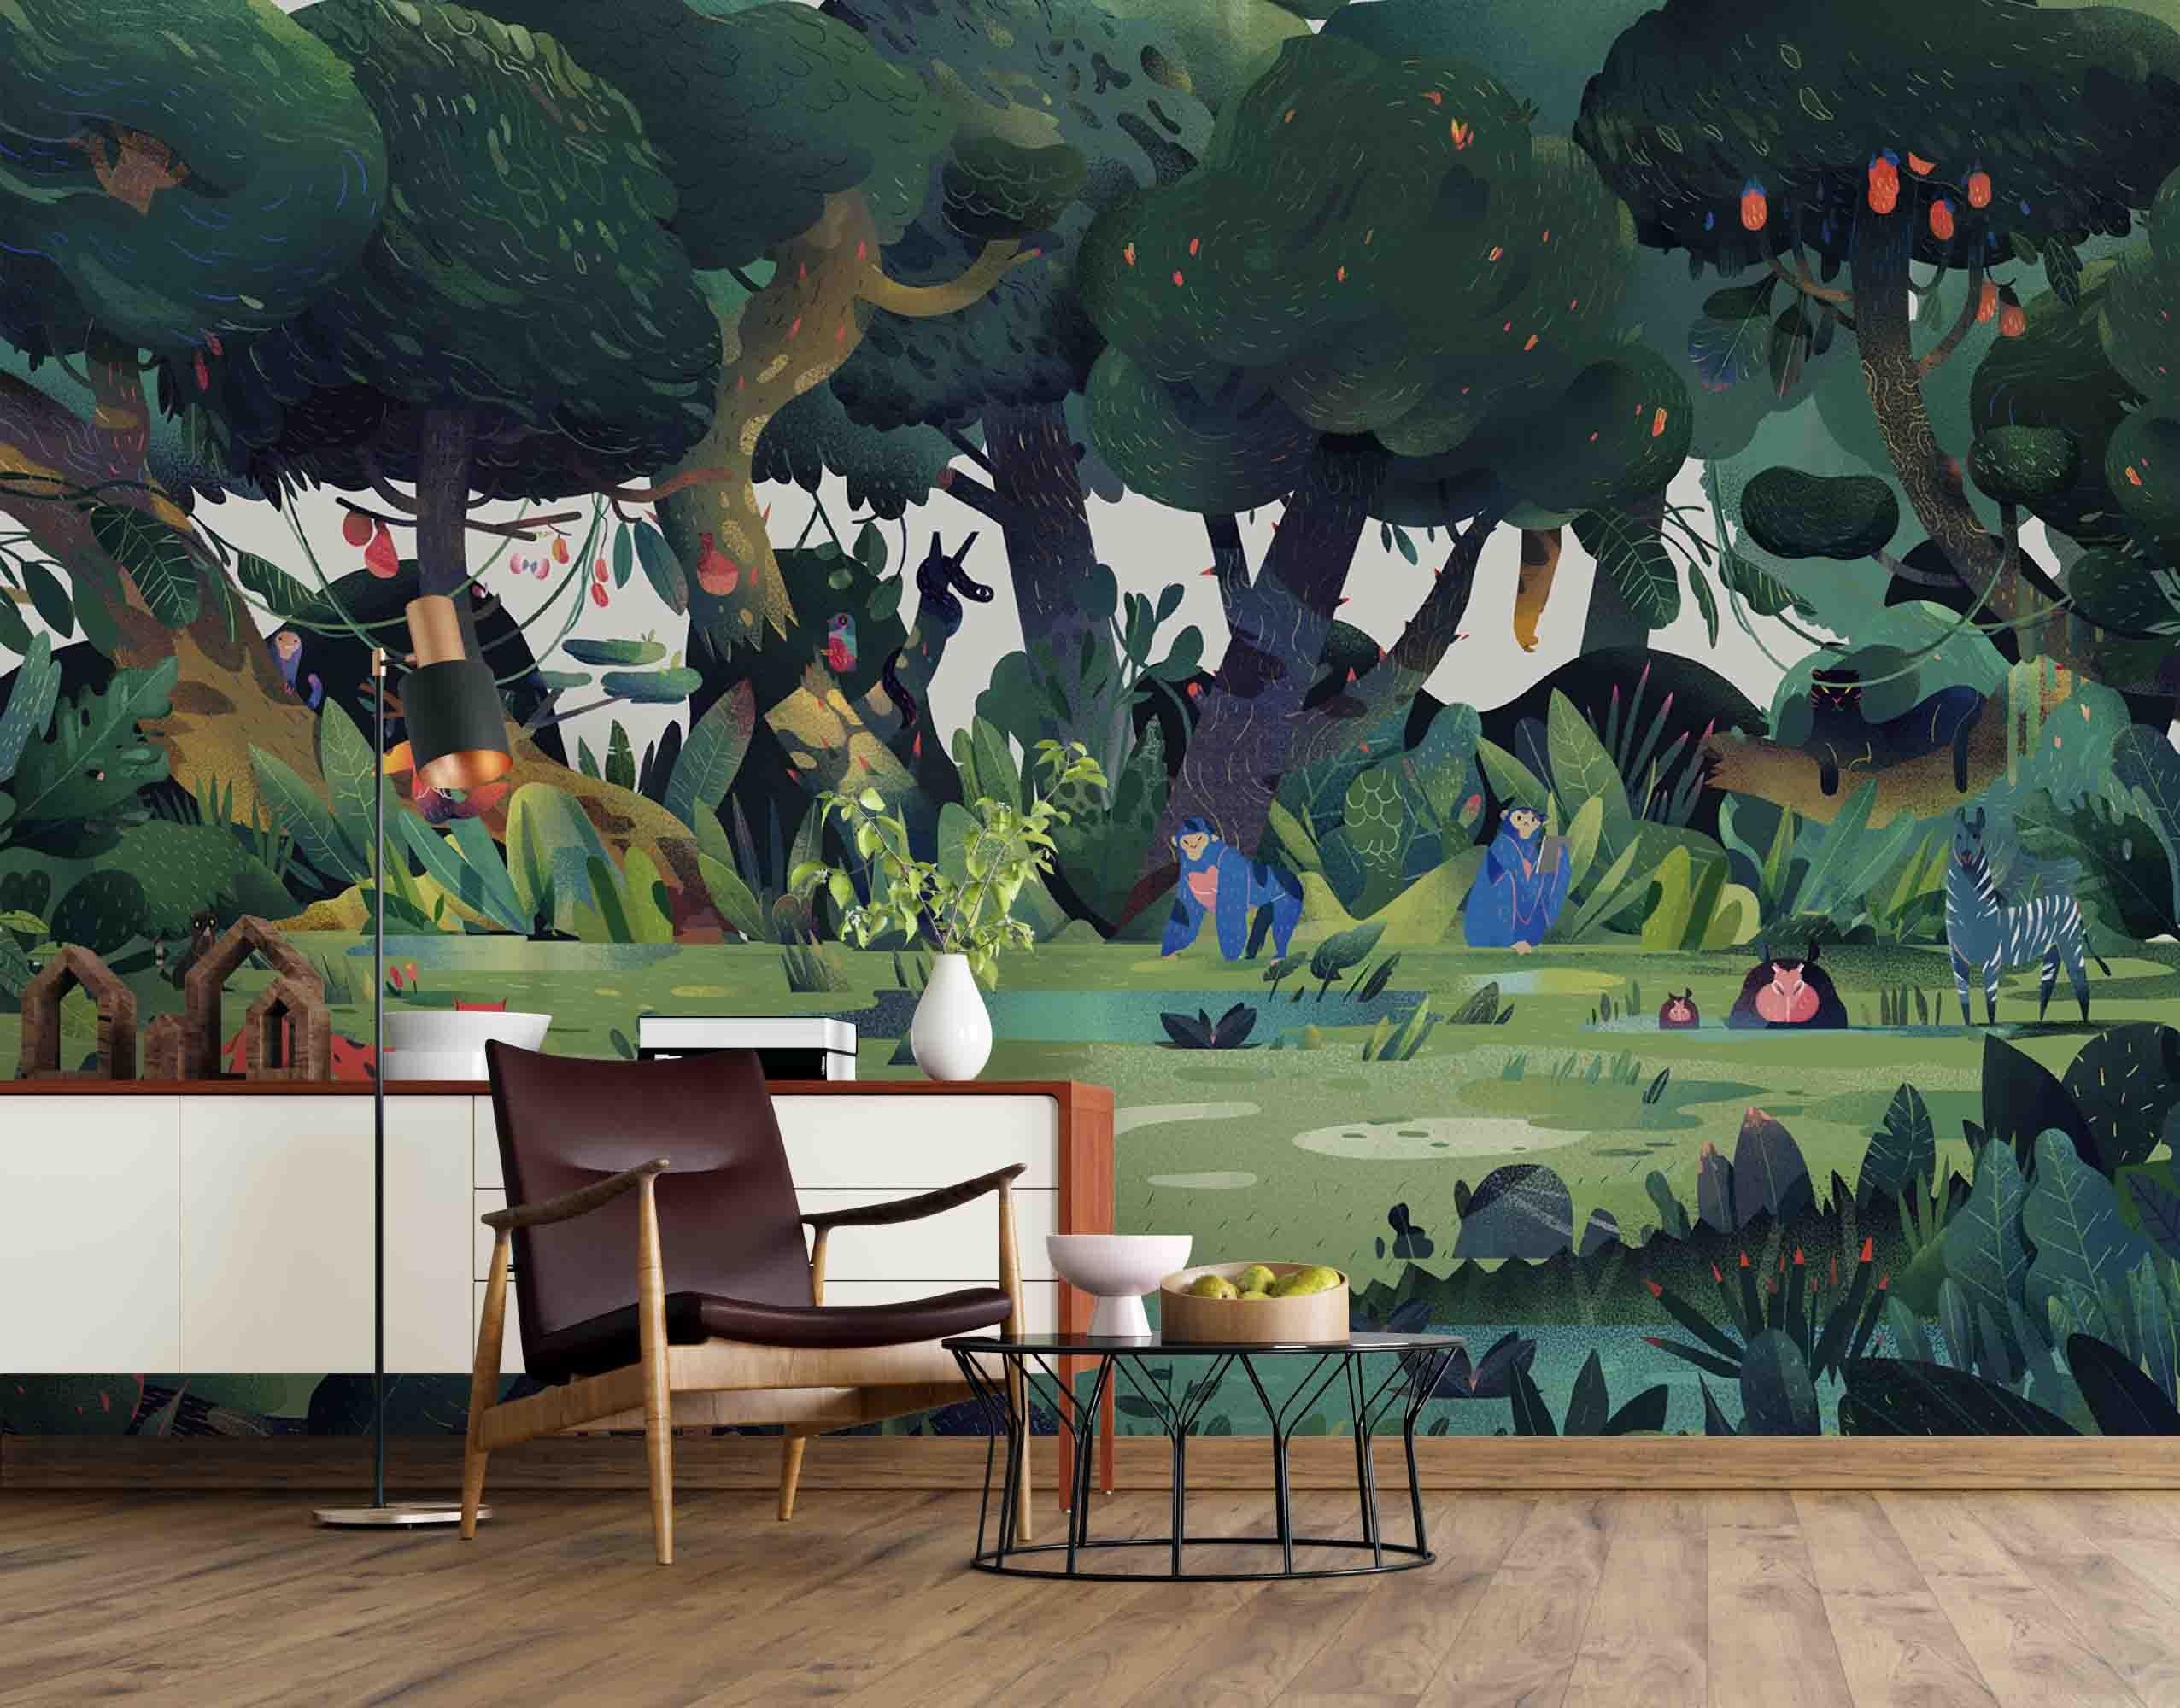 3D Cartoon Animal Forest Wall Mural Wallpaper SF35- Jess Art Decoration